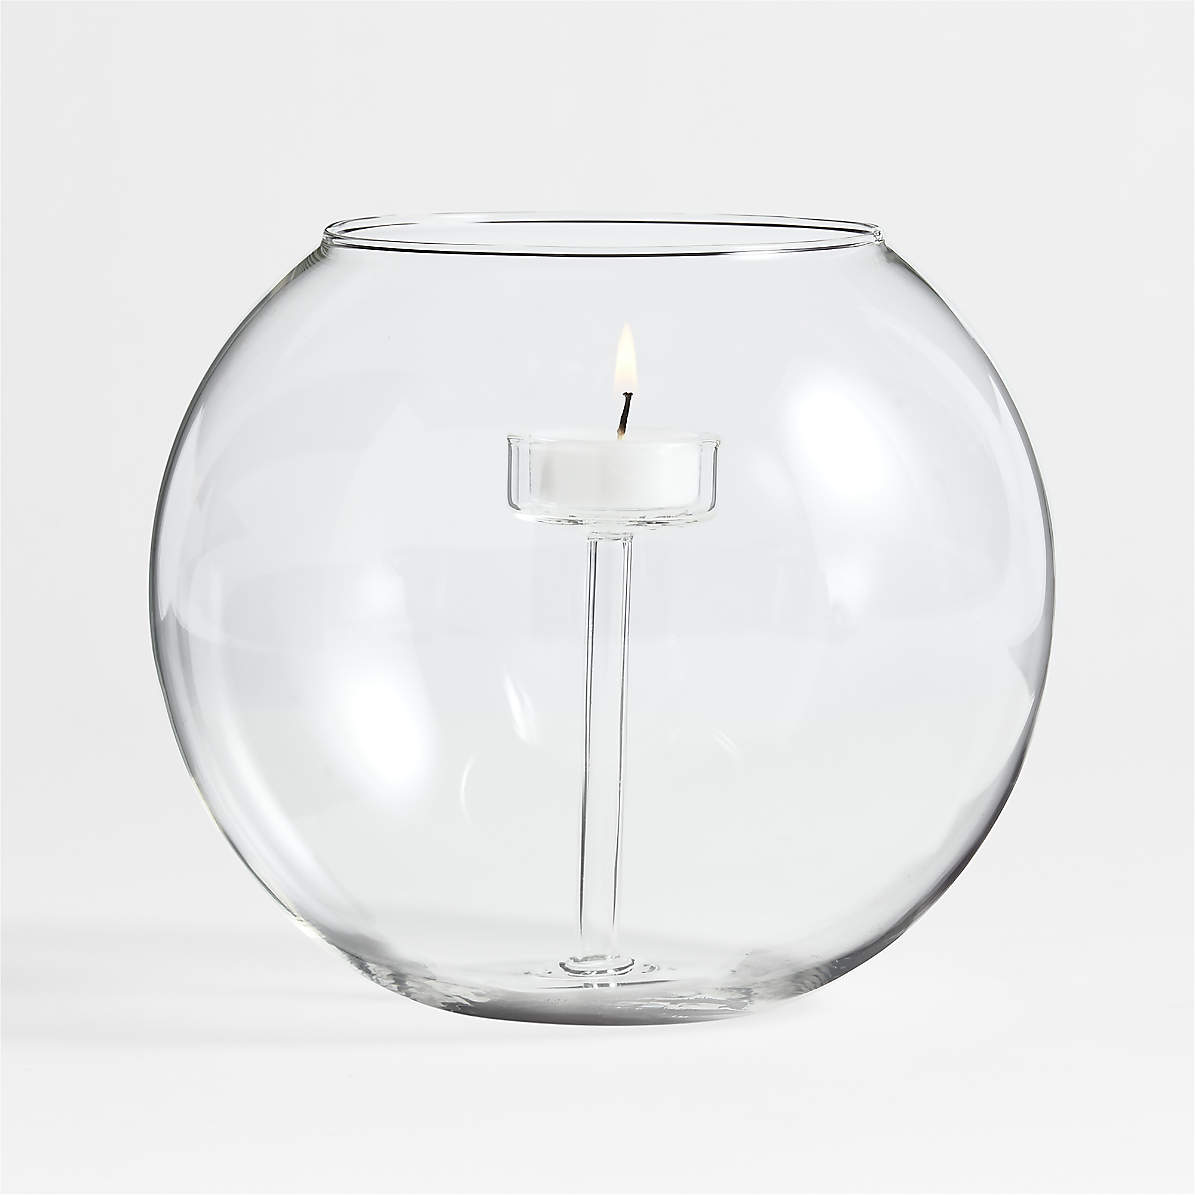 Modern Clear Glass Display Bowls, Plant Vases, Votive Candle Holder, Decorative Storage Jars, Set of 2